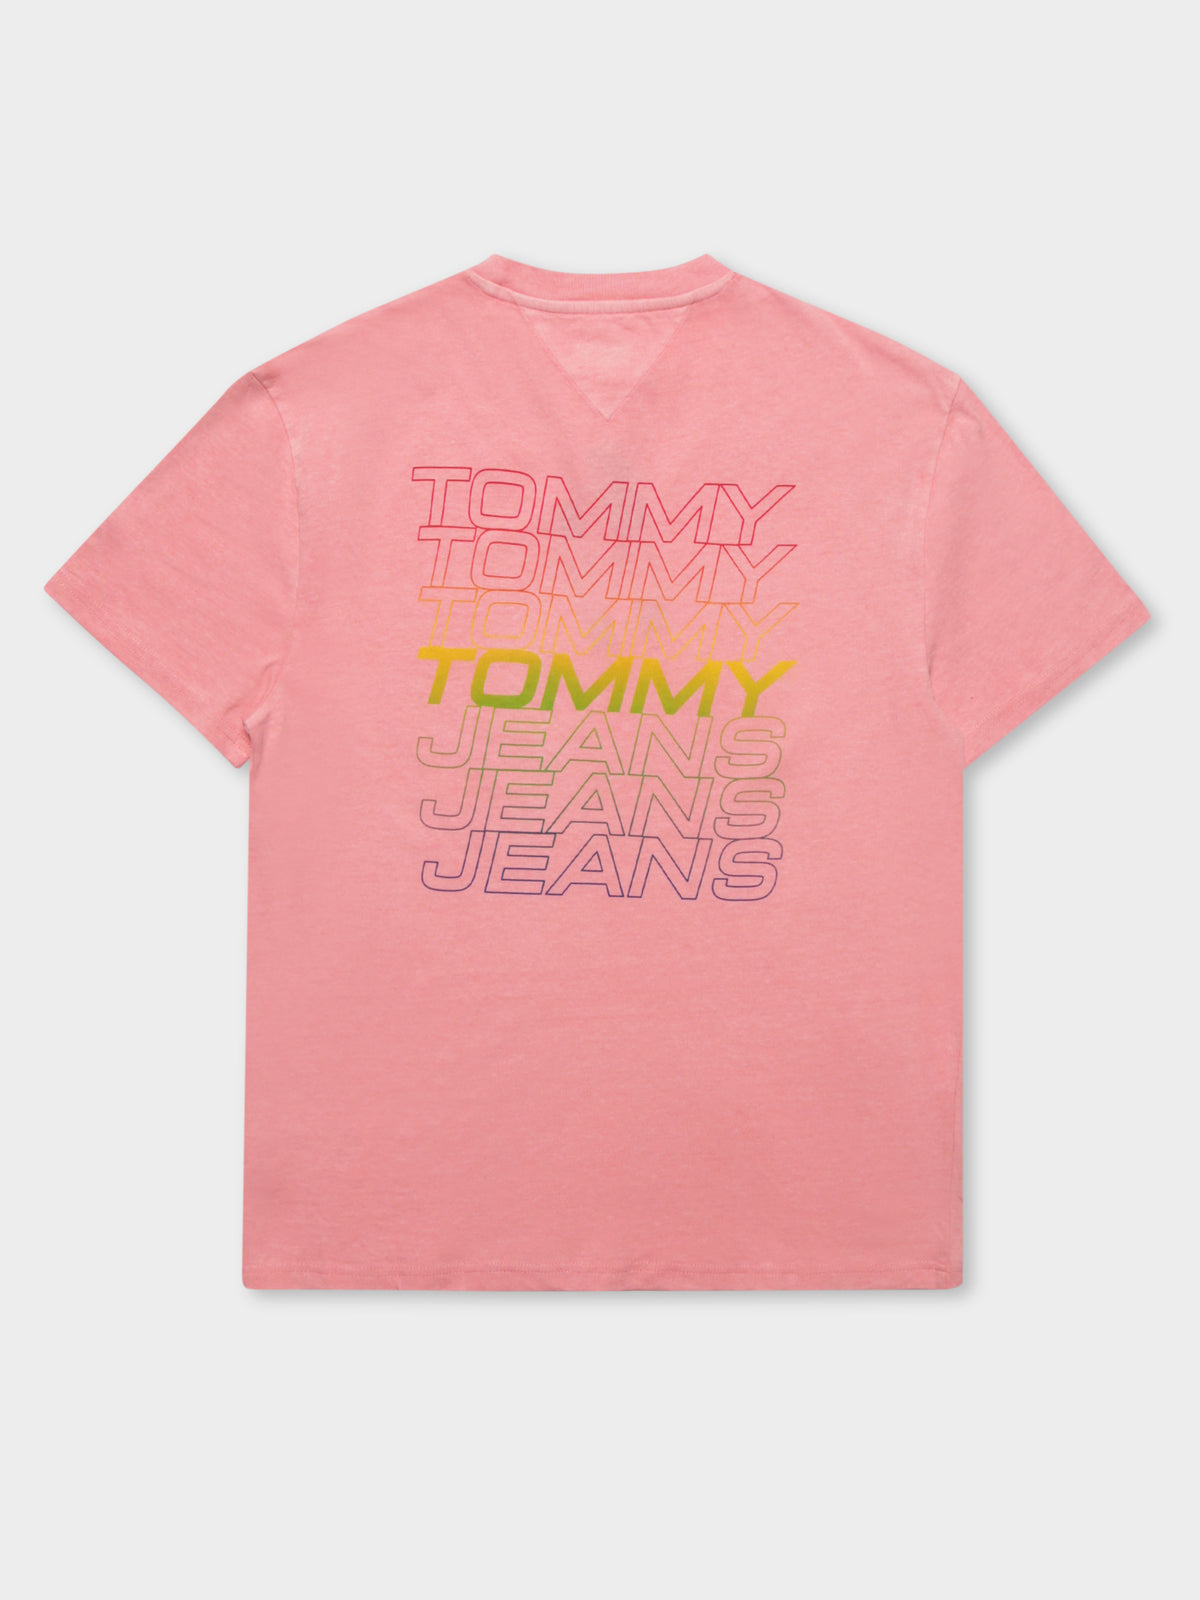 Repeat Logo T-Shirt in Rosey Pink